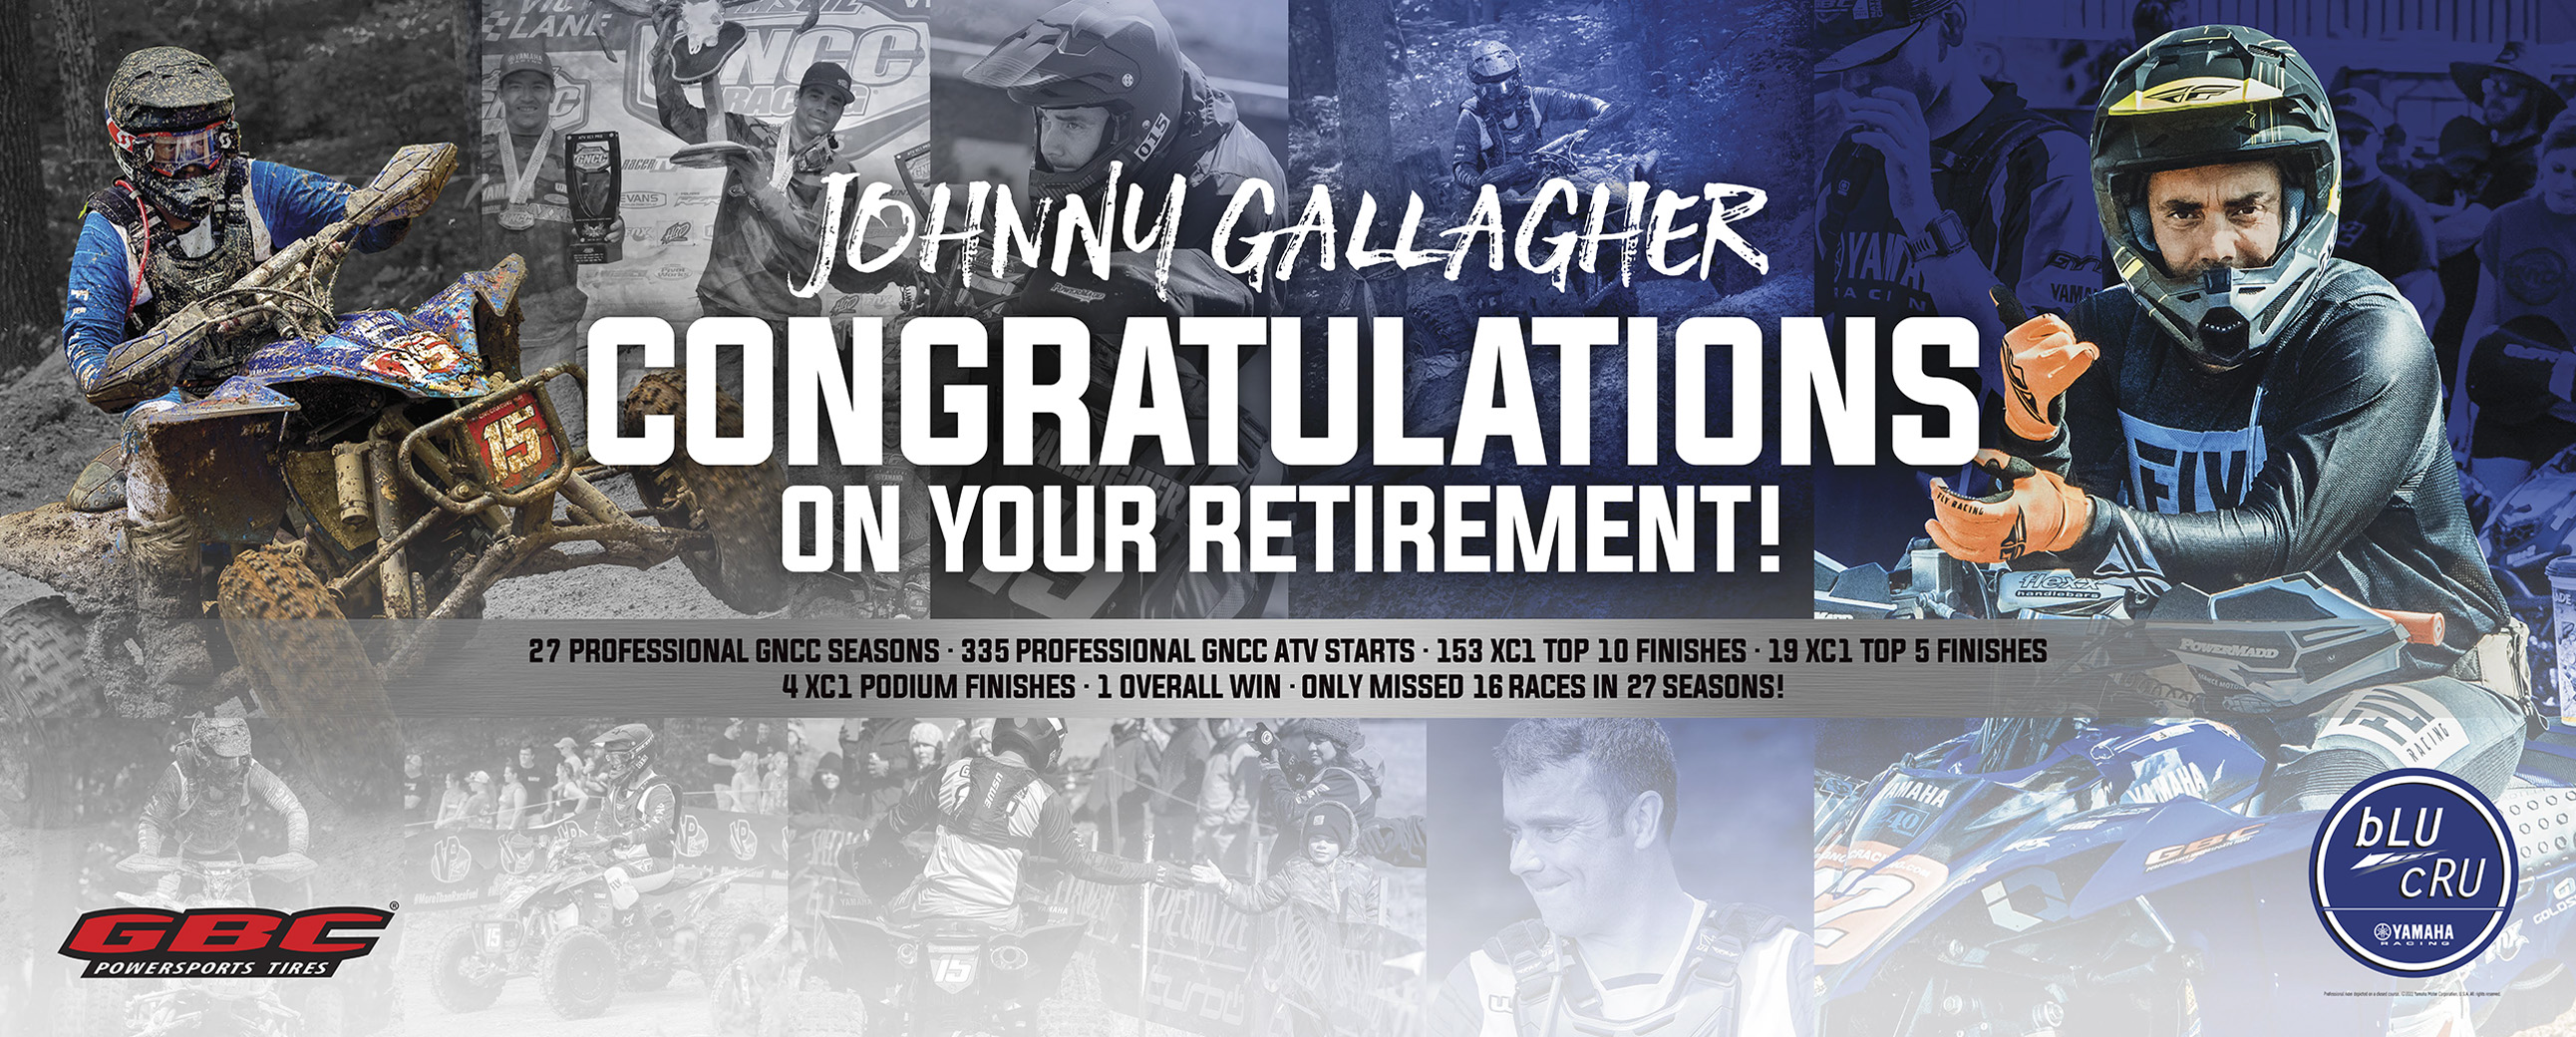 Gallagher Retirement